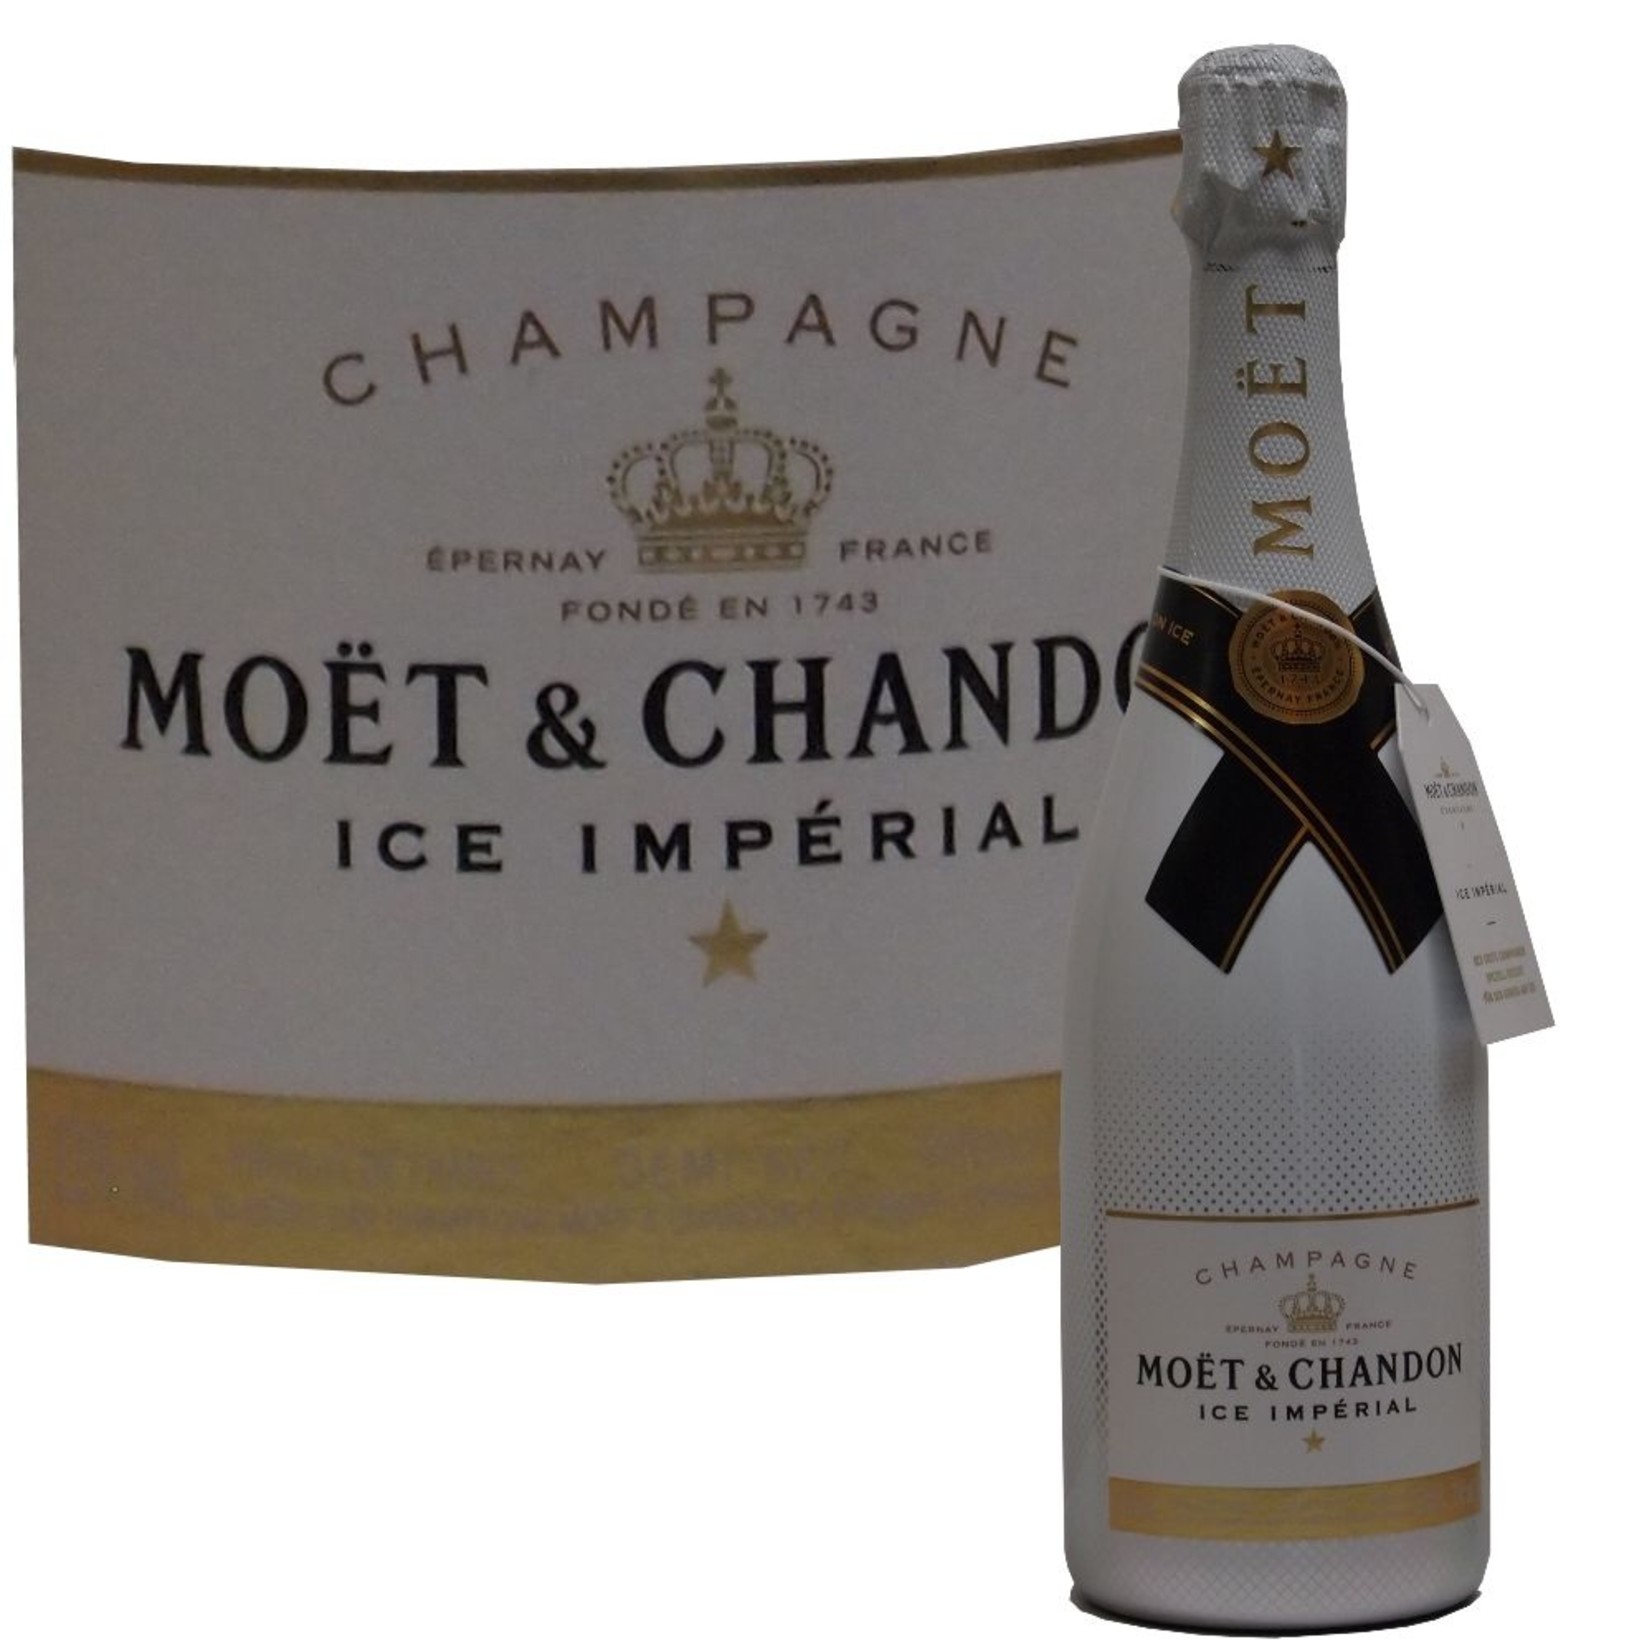 Moet & Chandon Champagner Imperial Ice für perfekten Champagnergenuß auf Eis exklusives Geschenkpaket mit Champagnerbechern